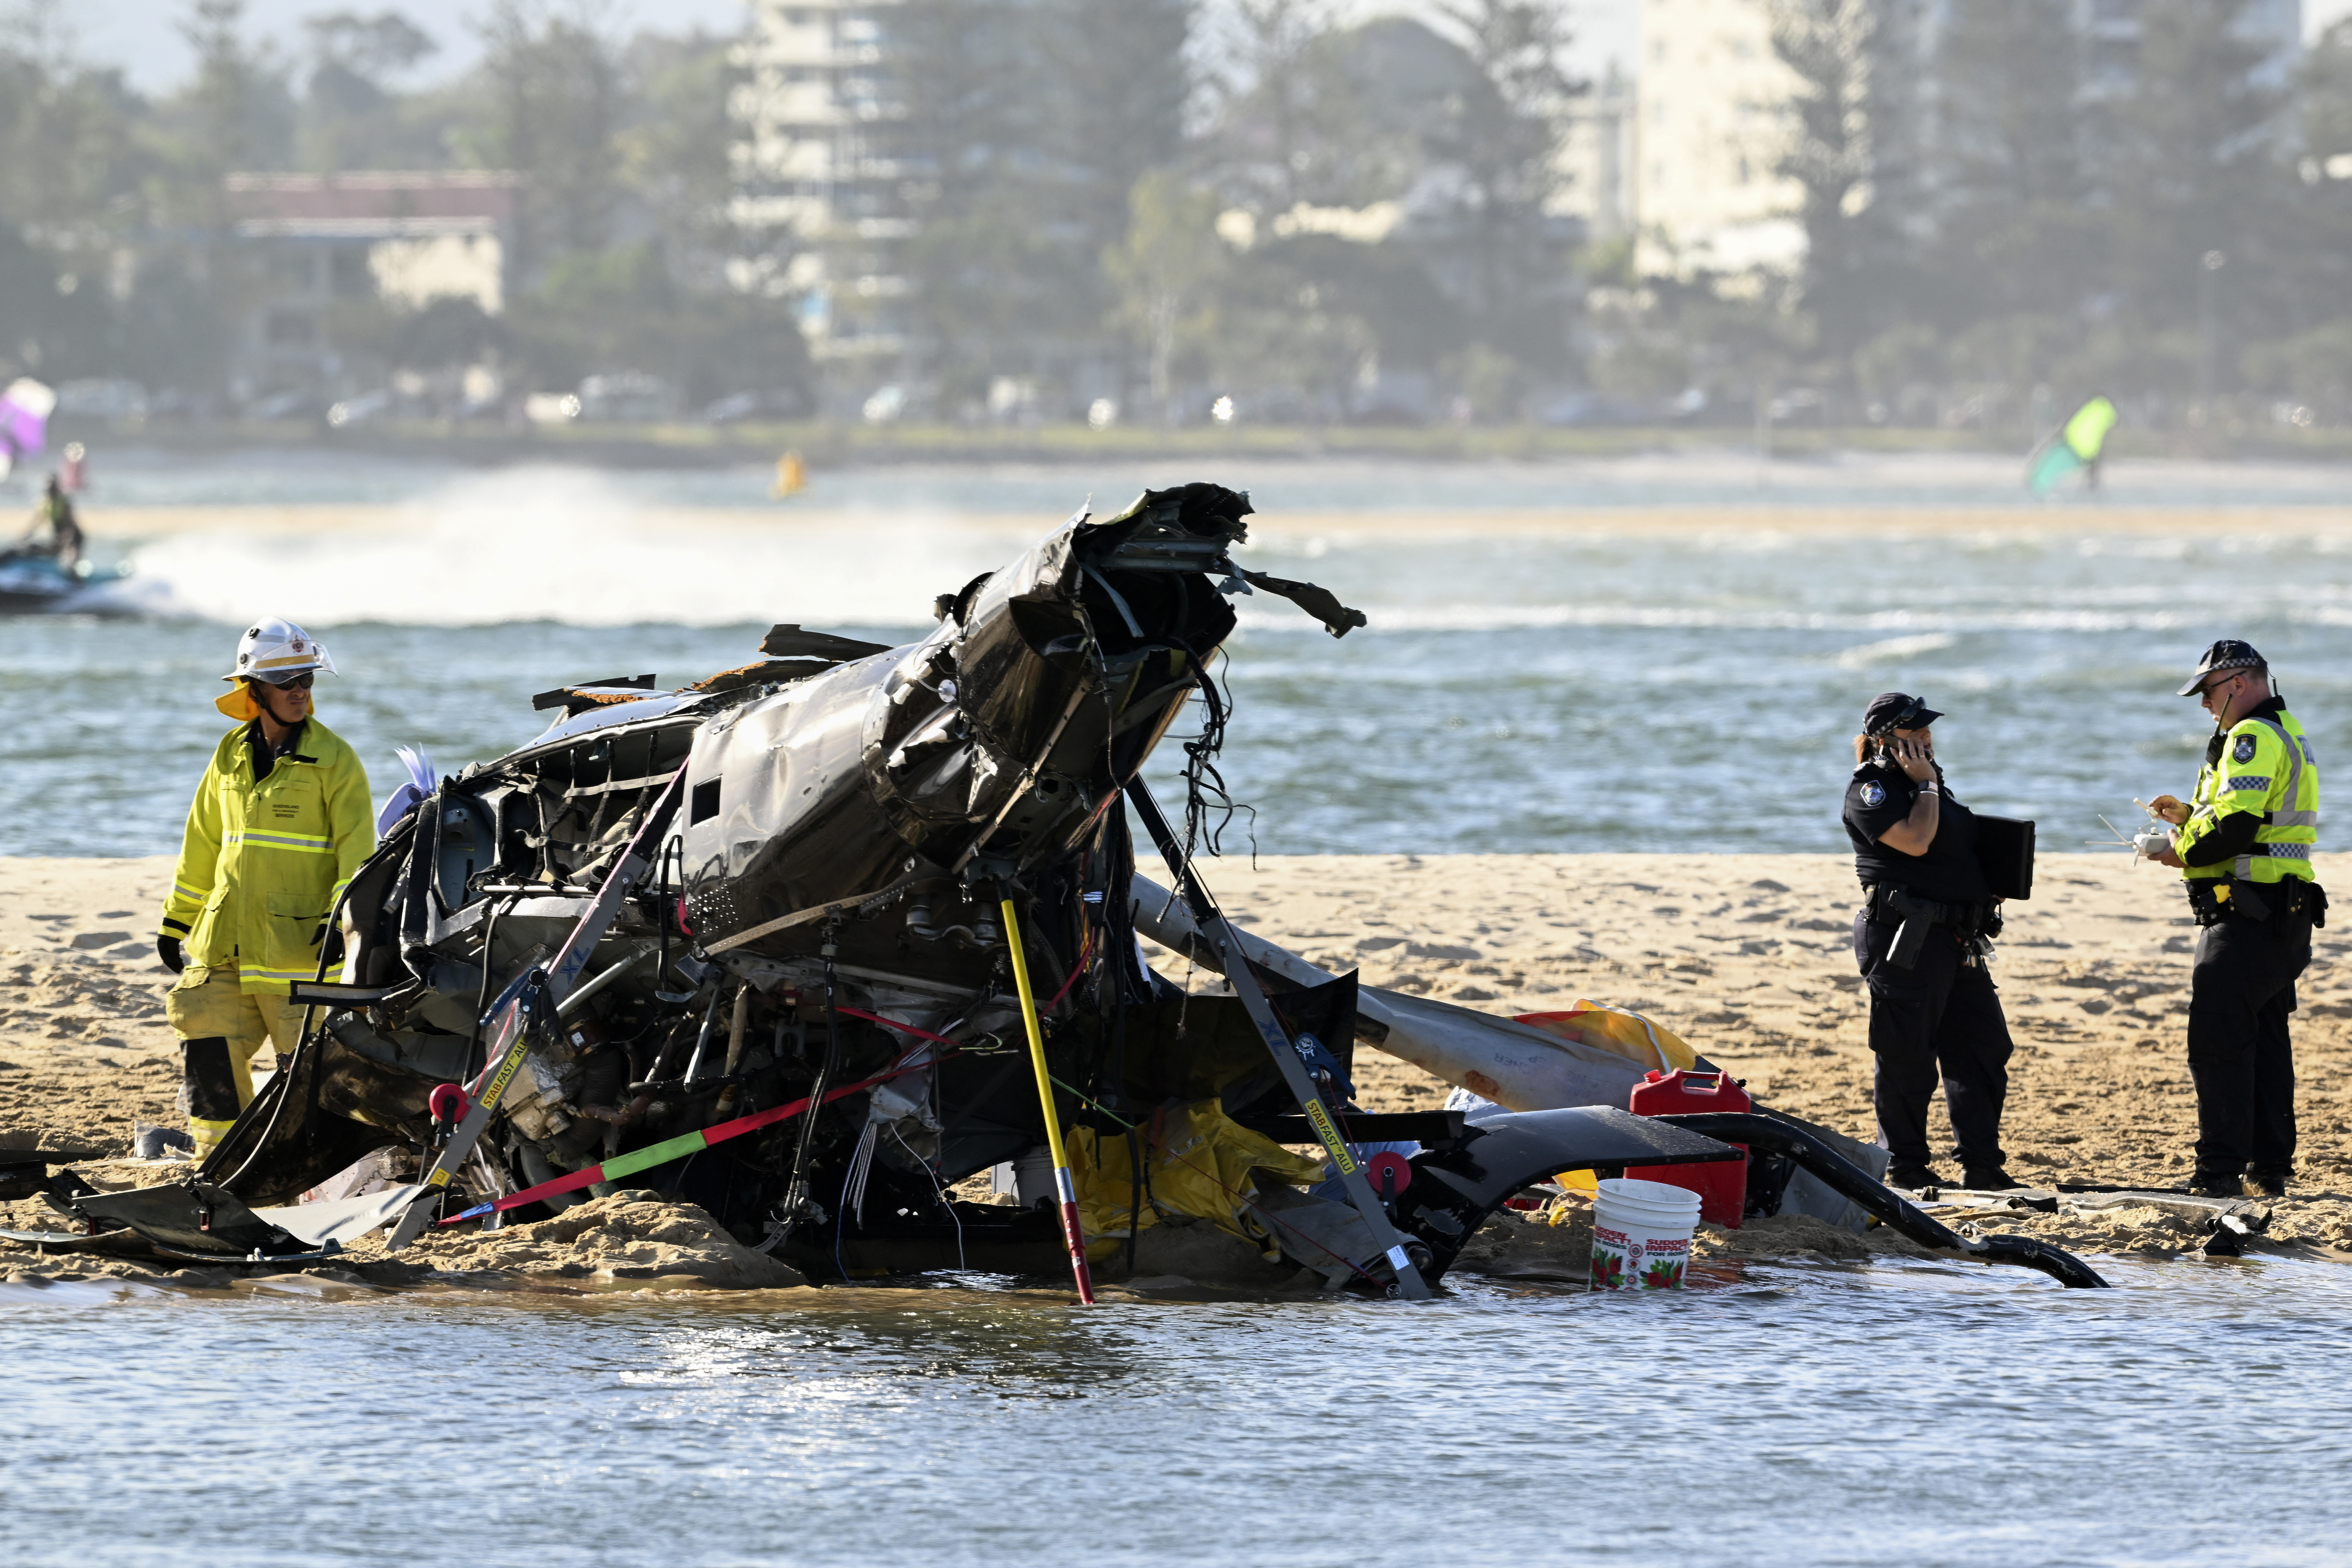 Los trabajadores de emergencia inspeccionan un helicóptero en una escena de colisión cerca de Seaworld, en Gold Coast, Australia. (Imagen de Dave Hunt/AAP vía AP)

